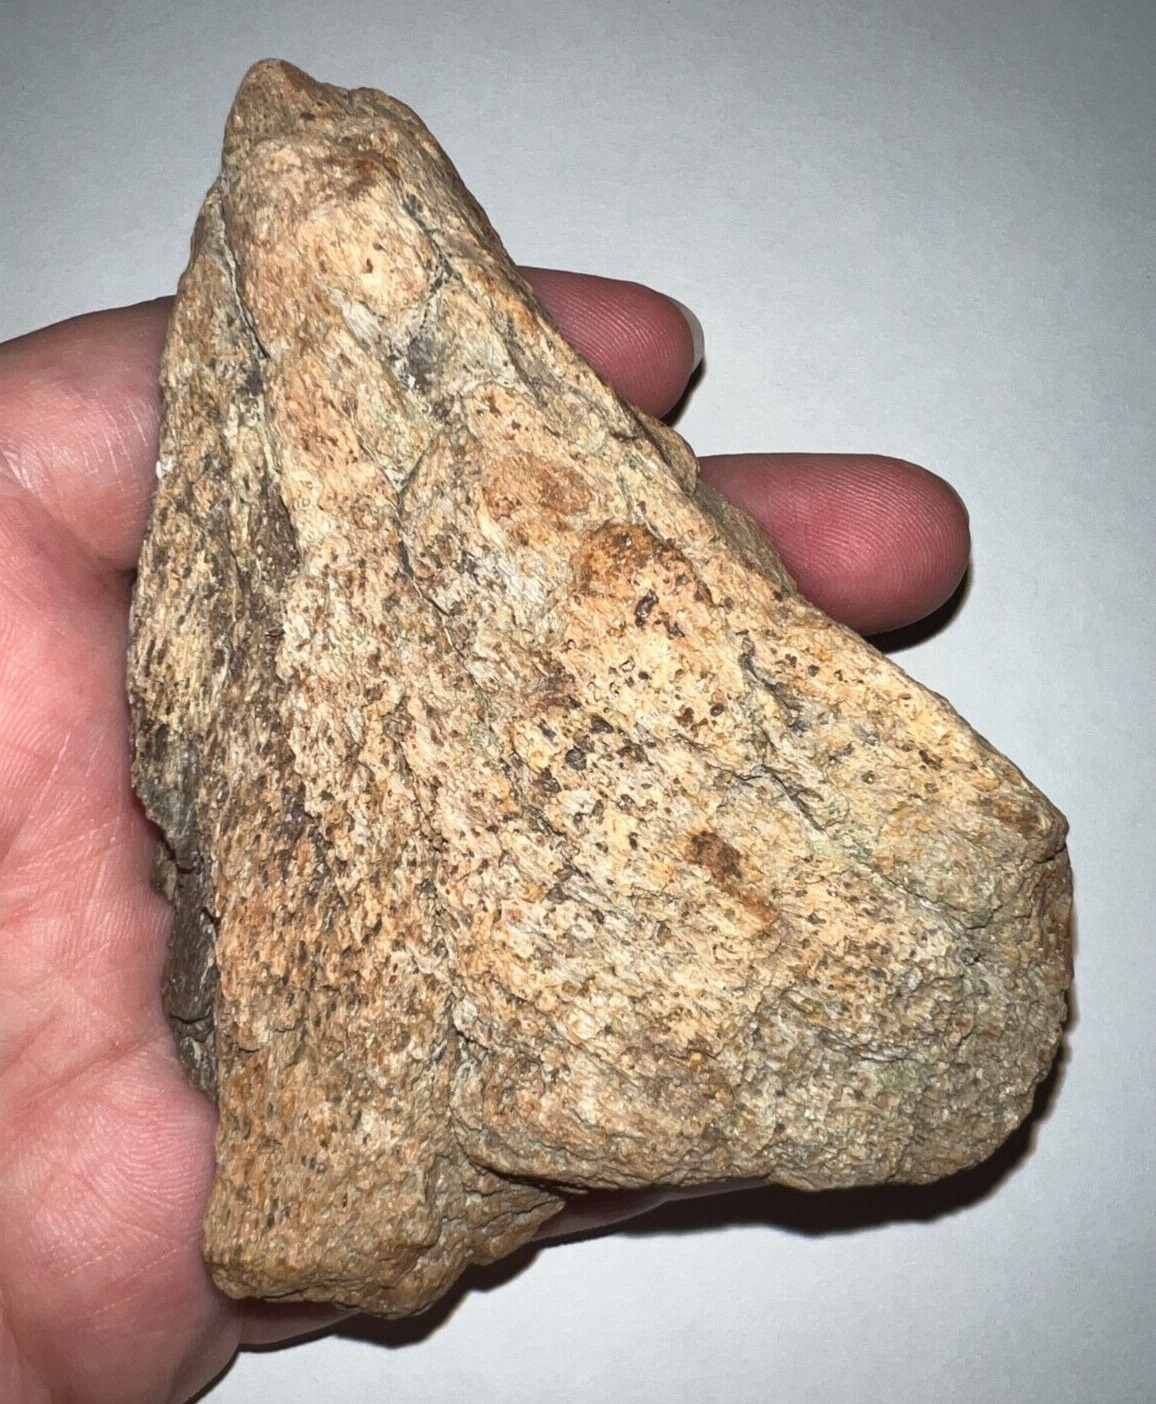 TRICERATOPS FRILL Fossil Dinosaur Skull Bone 4 INCHES